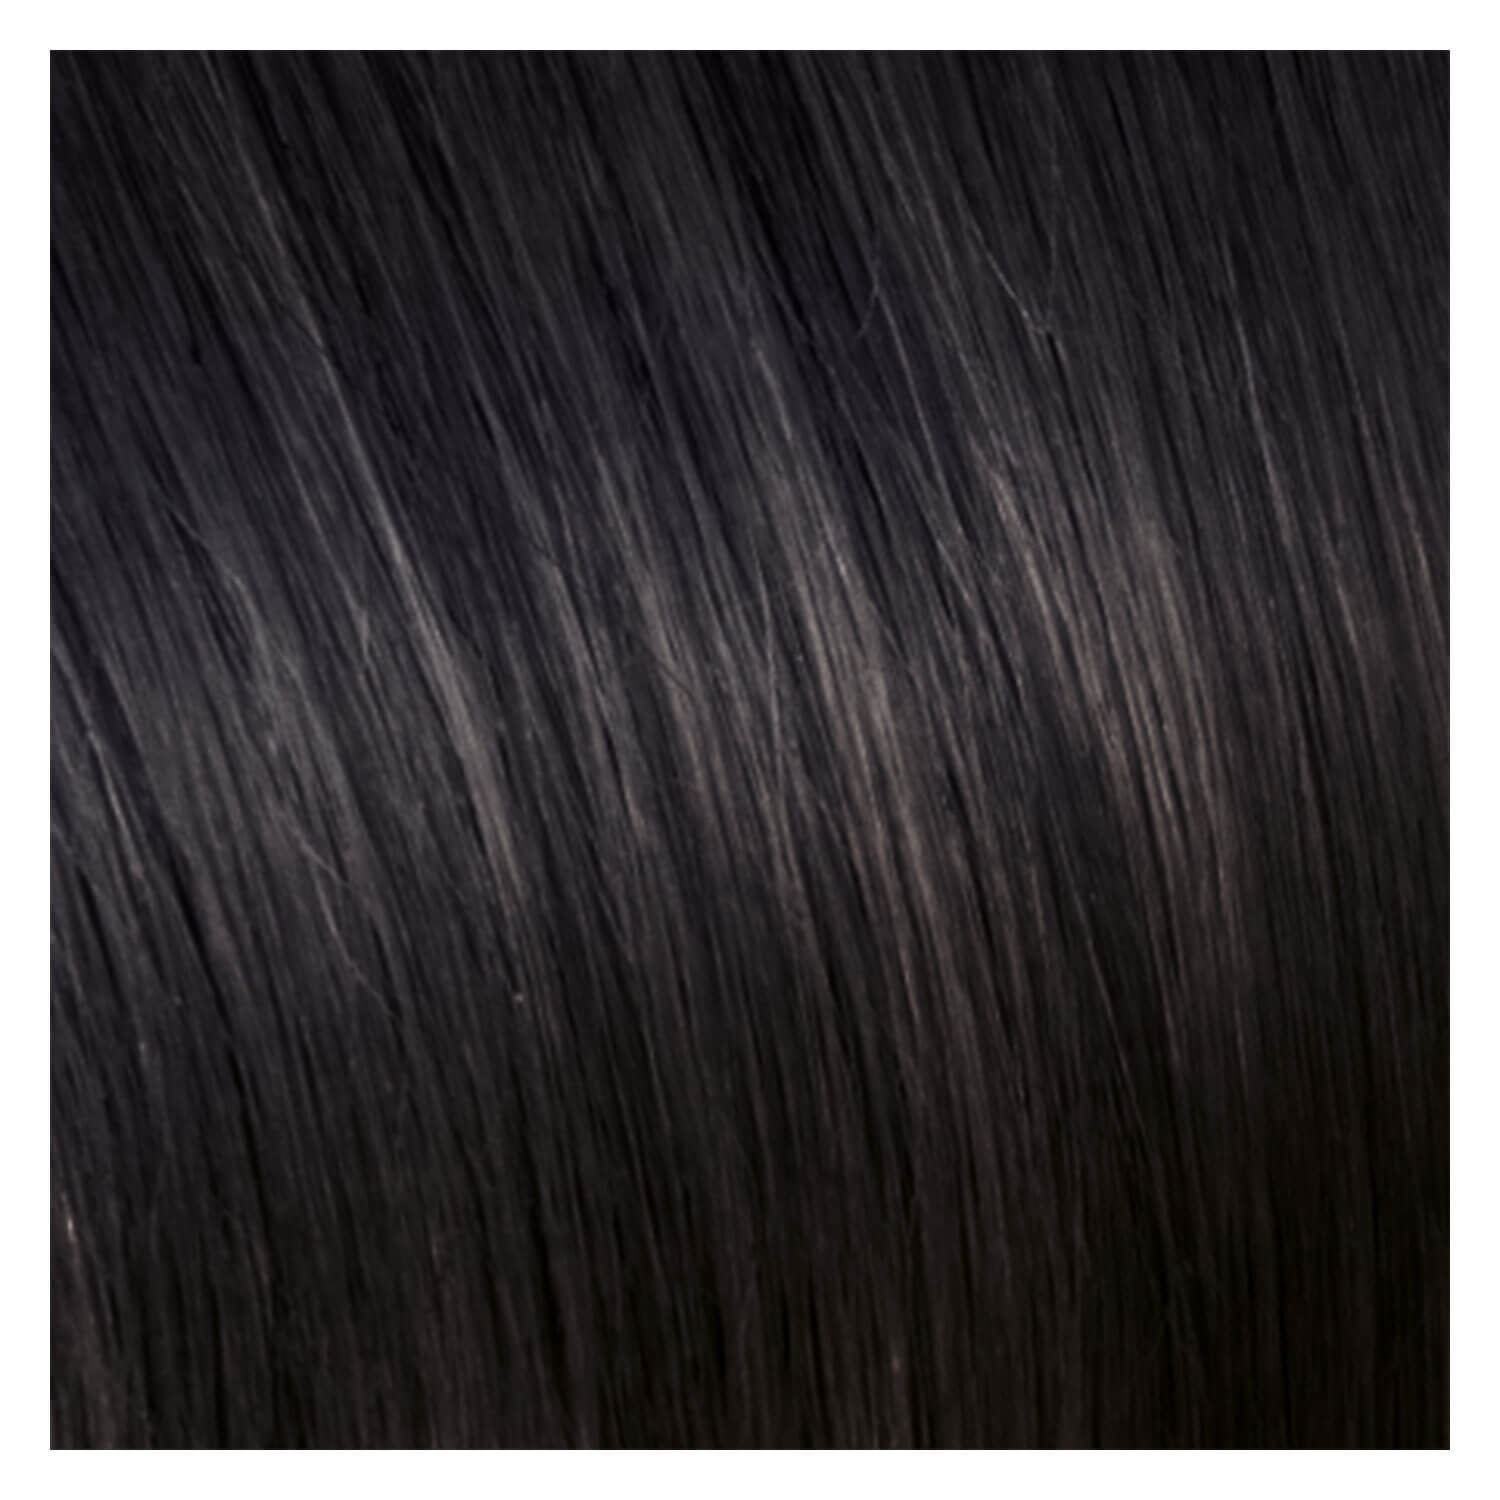 Produktbild von SHE Clip In-System Hair Extensions - 2 Dunkles Kastanienbraun 50/55cm